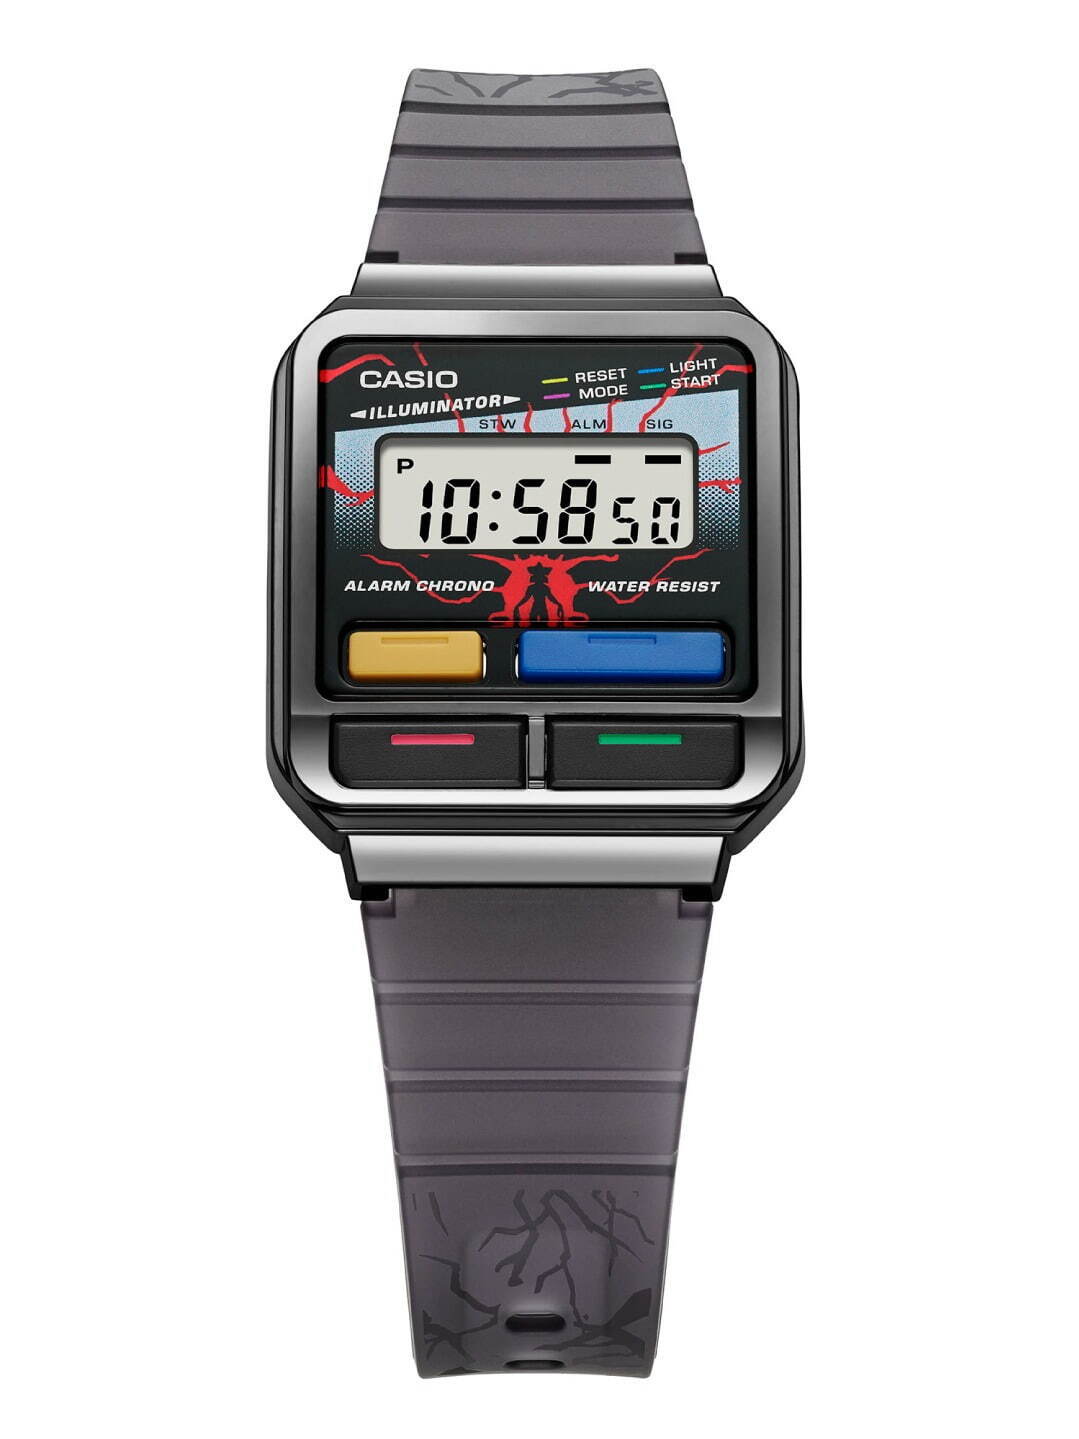 カシオ×ストレンジャー・シングスのコラボ腕時計、レトロな80